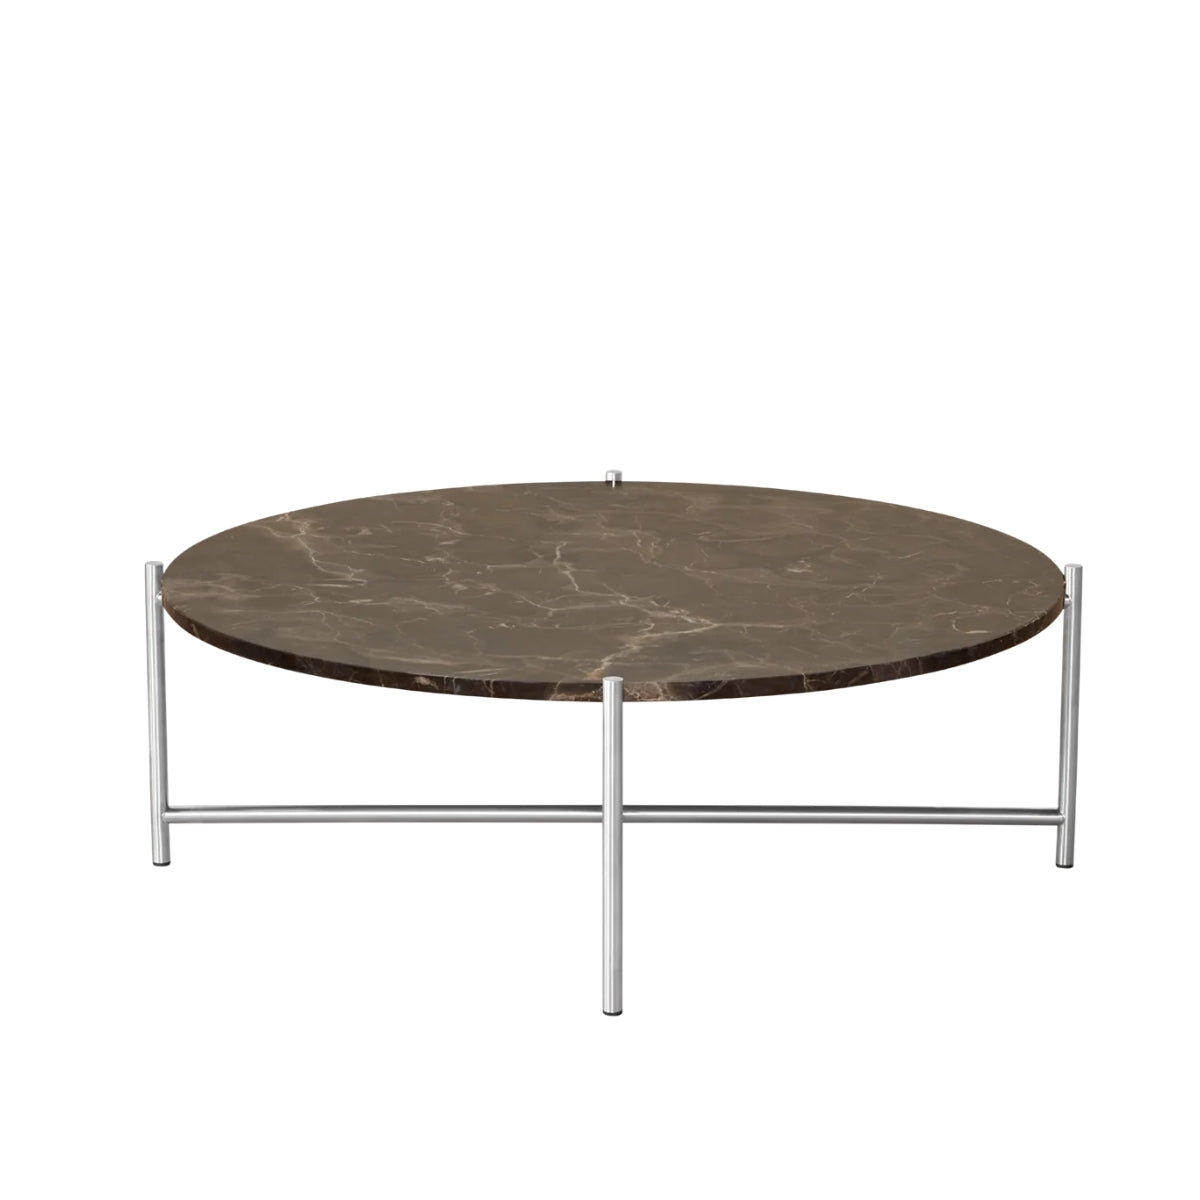 HANDVÄRK | Round Coffee Table 90 - Stainless steel